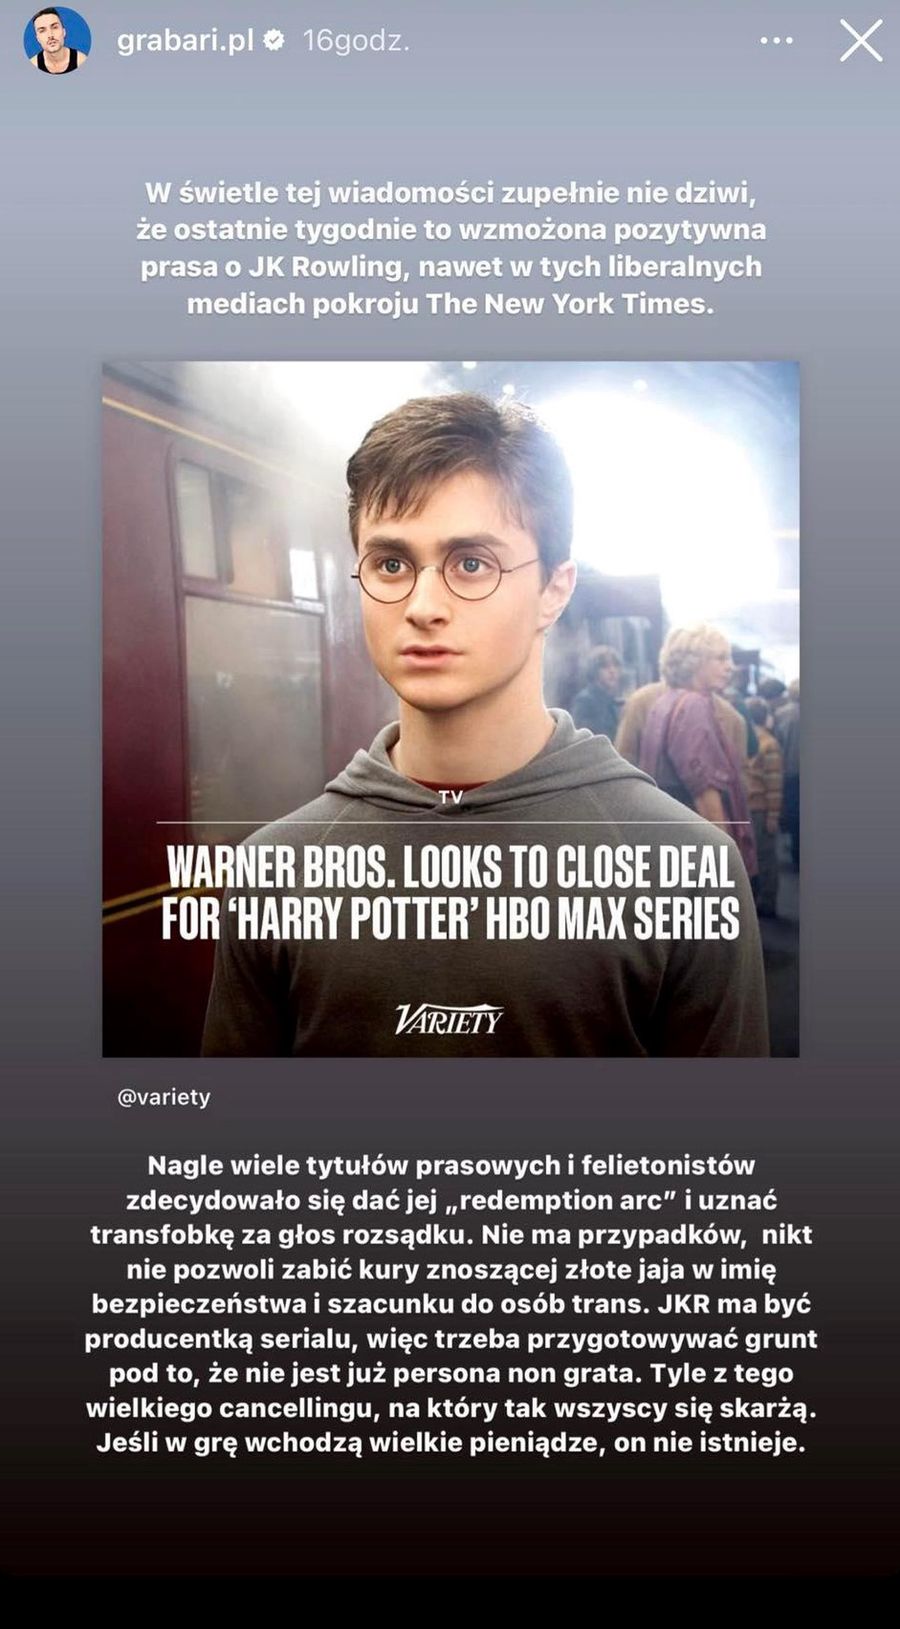 Koniec transfobii J.K. Rowling przez serial "Harry Potter"?